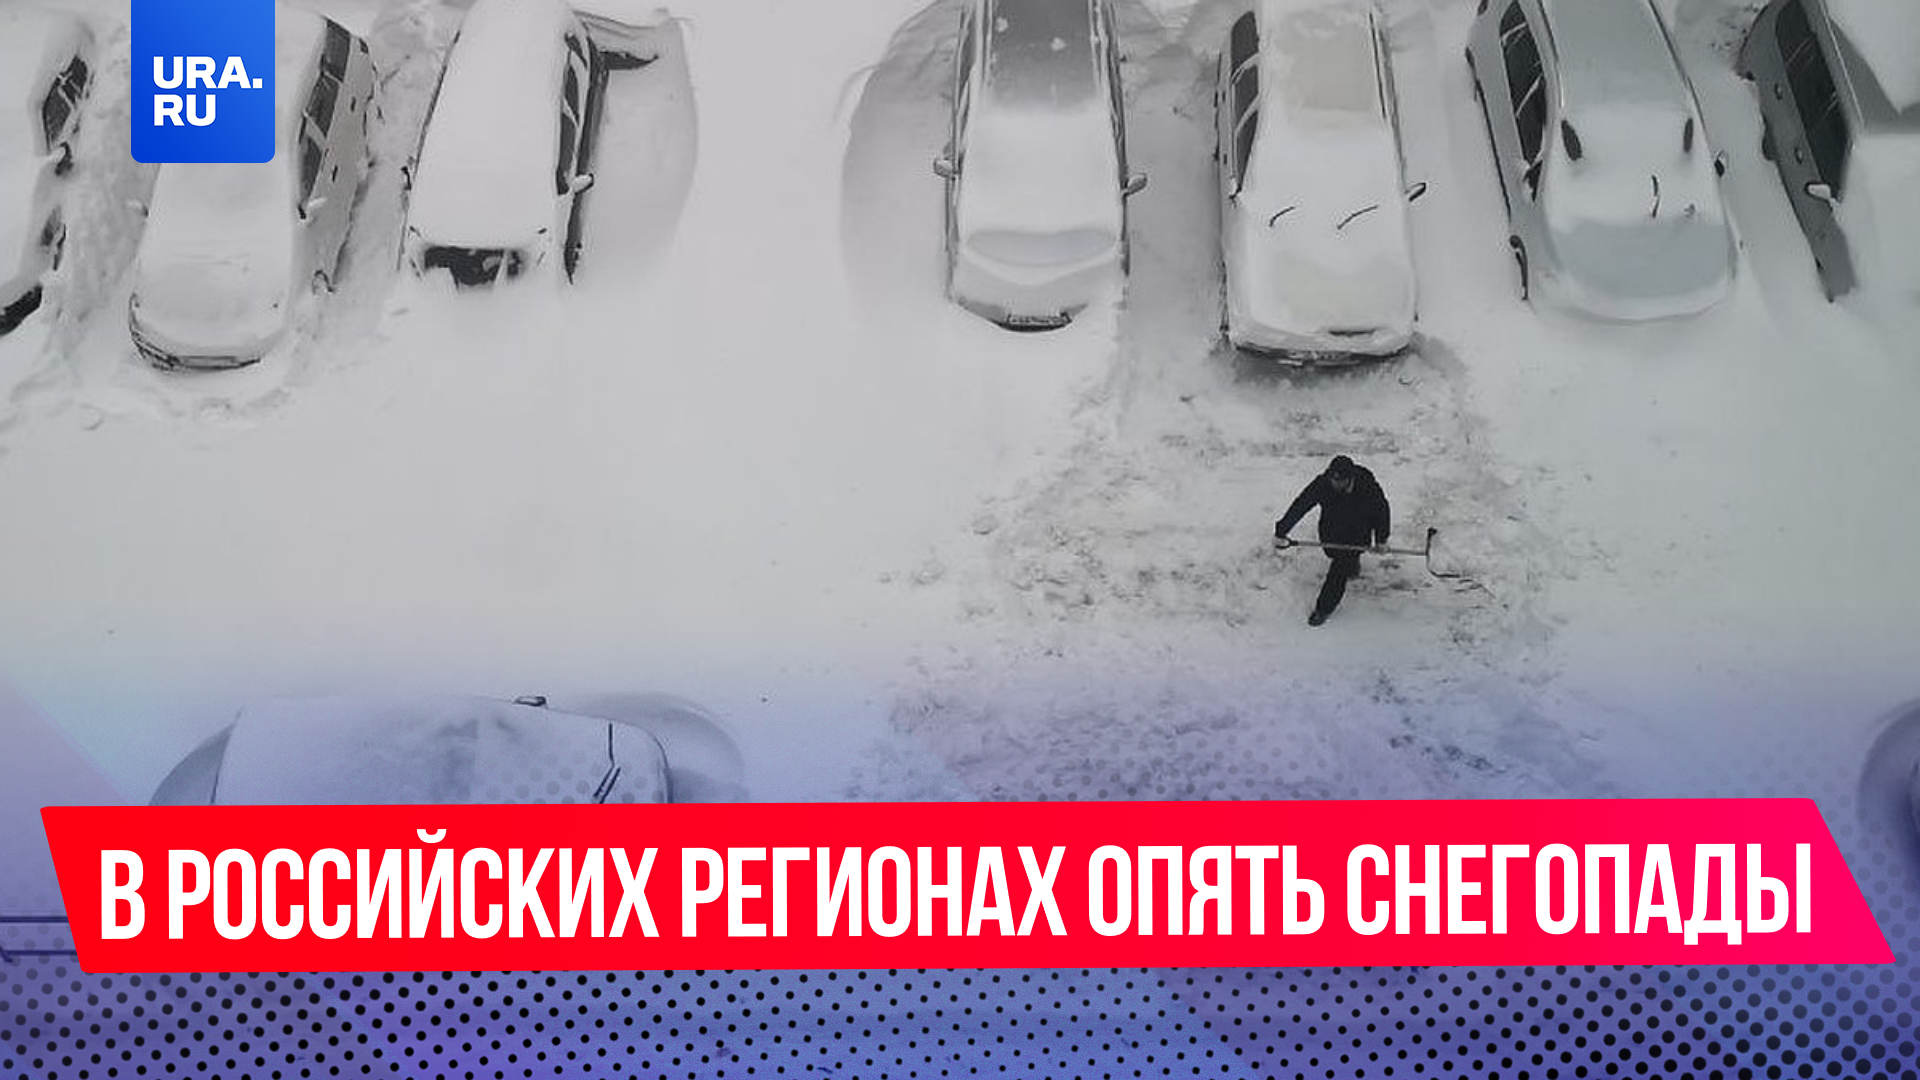 «Через три дня лето, а тут еще, по-моему, до него далеко»: в российских регионах опять снегопады